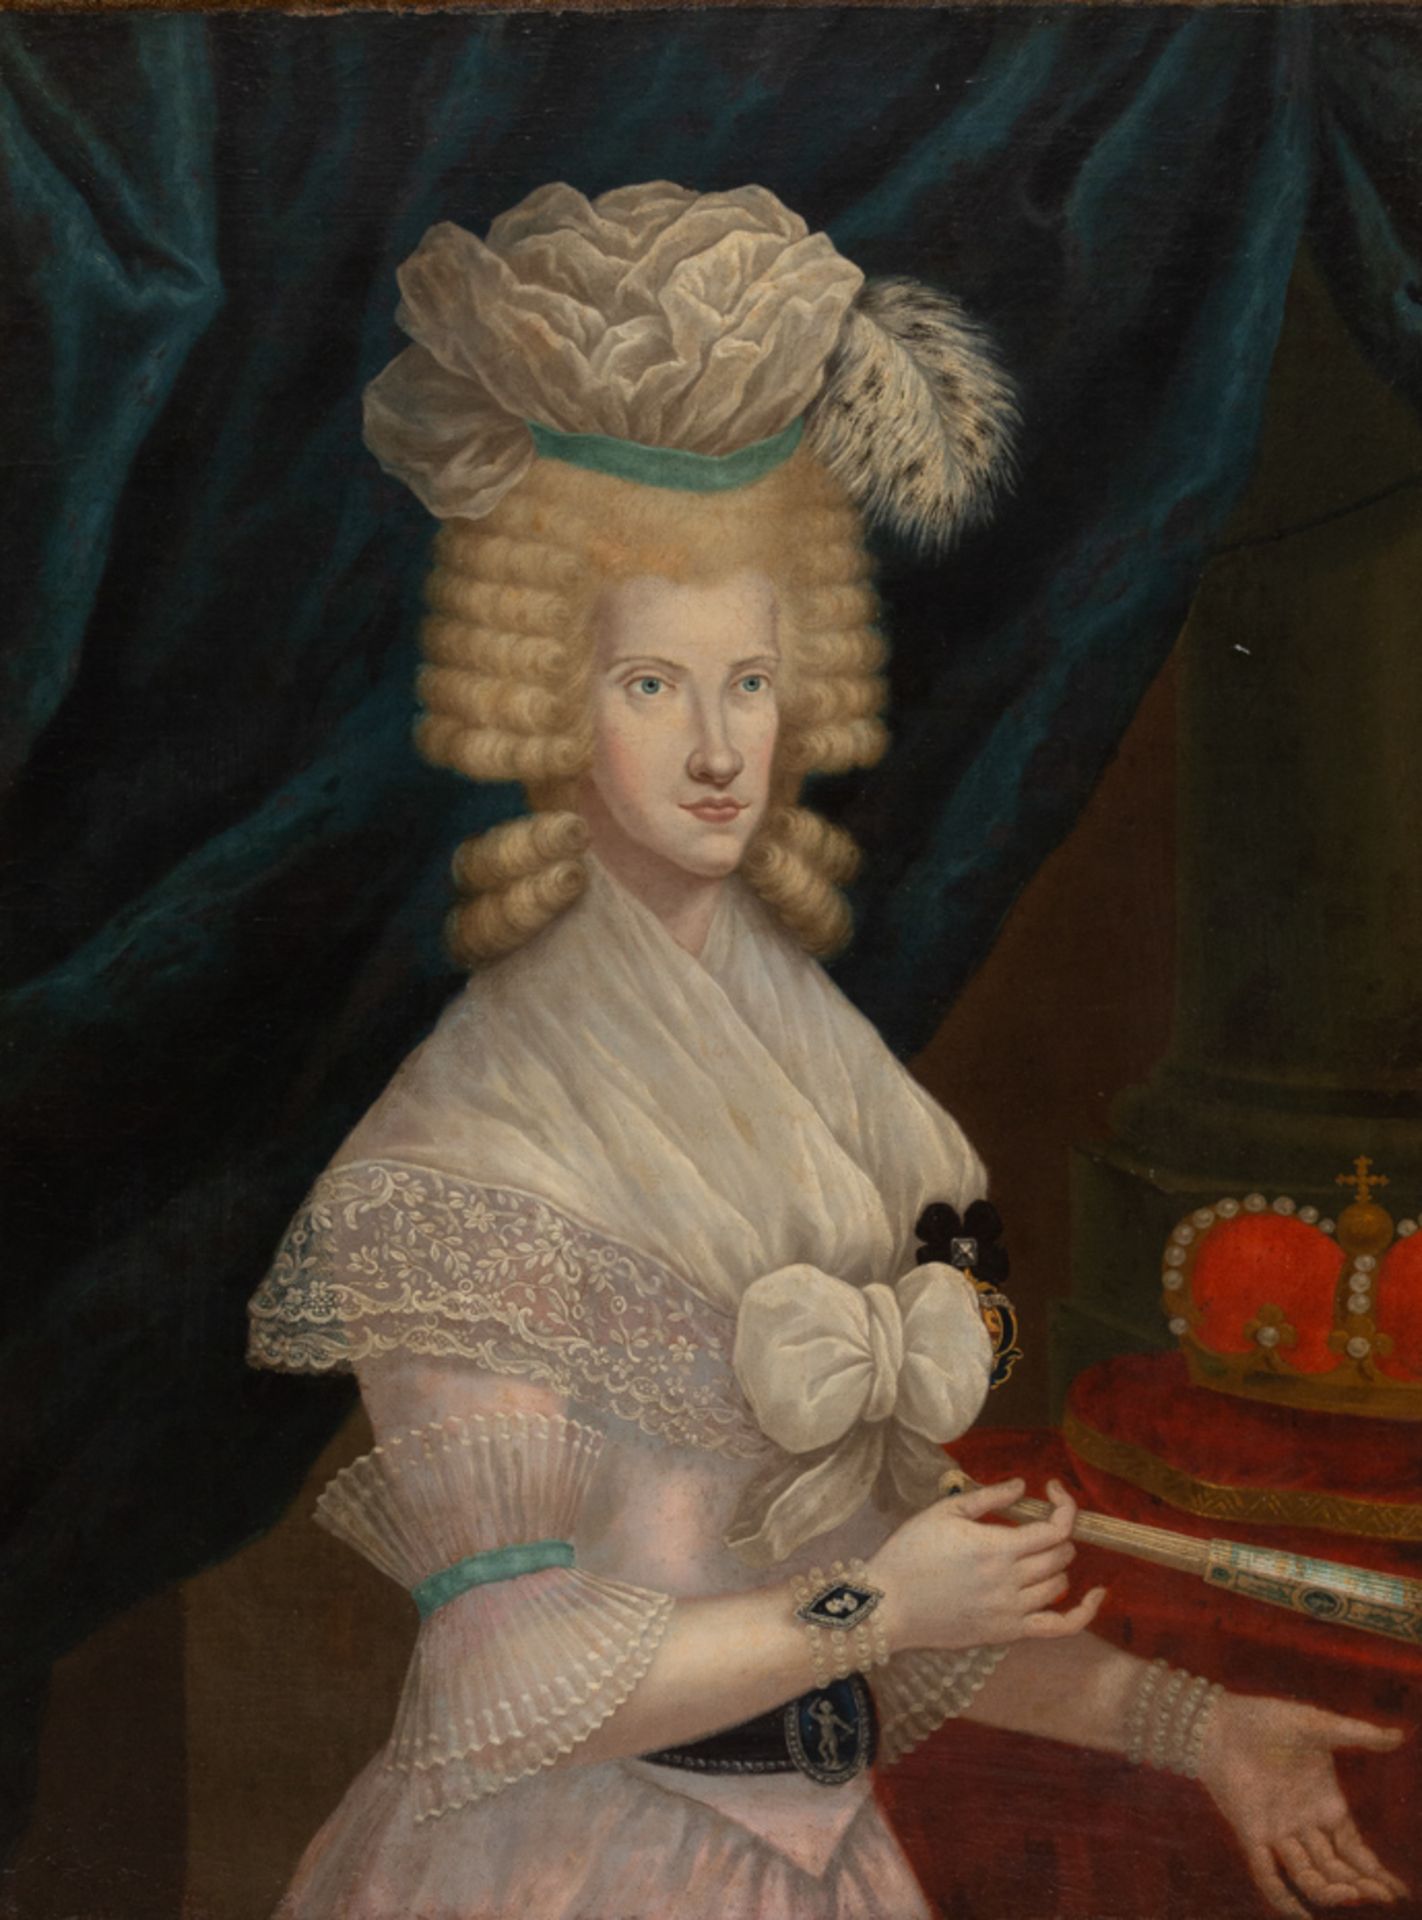 UNBEKANNTER MALER, Portrait einer Fürstin, Öl auf Leinwand, 18. Jh. - Bild 2 aus 3